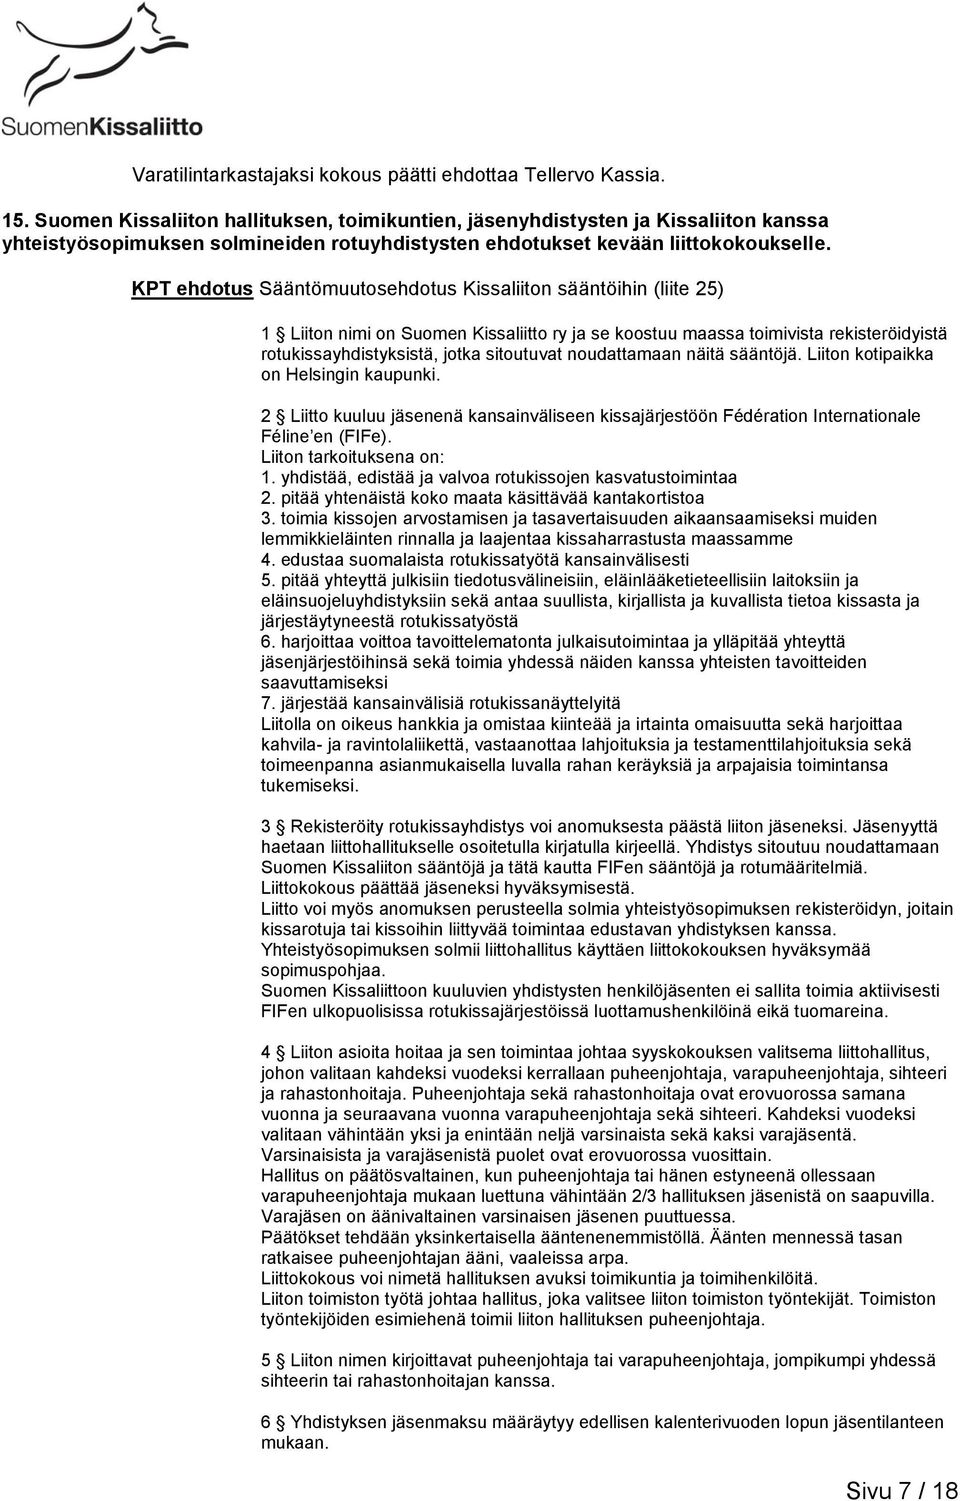 KPT ehdotus Sääntömuutosehdotus Kissaliiton sääntöihin (liite 25) 1 Liiton nimi on Suomen Kissaliitto ry ja se koostuu maassa toimivista rekisteröidyistä rotukissayhdistyksistä, jotka sitoutuvat